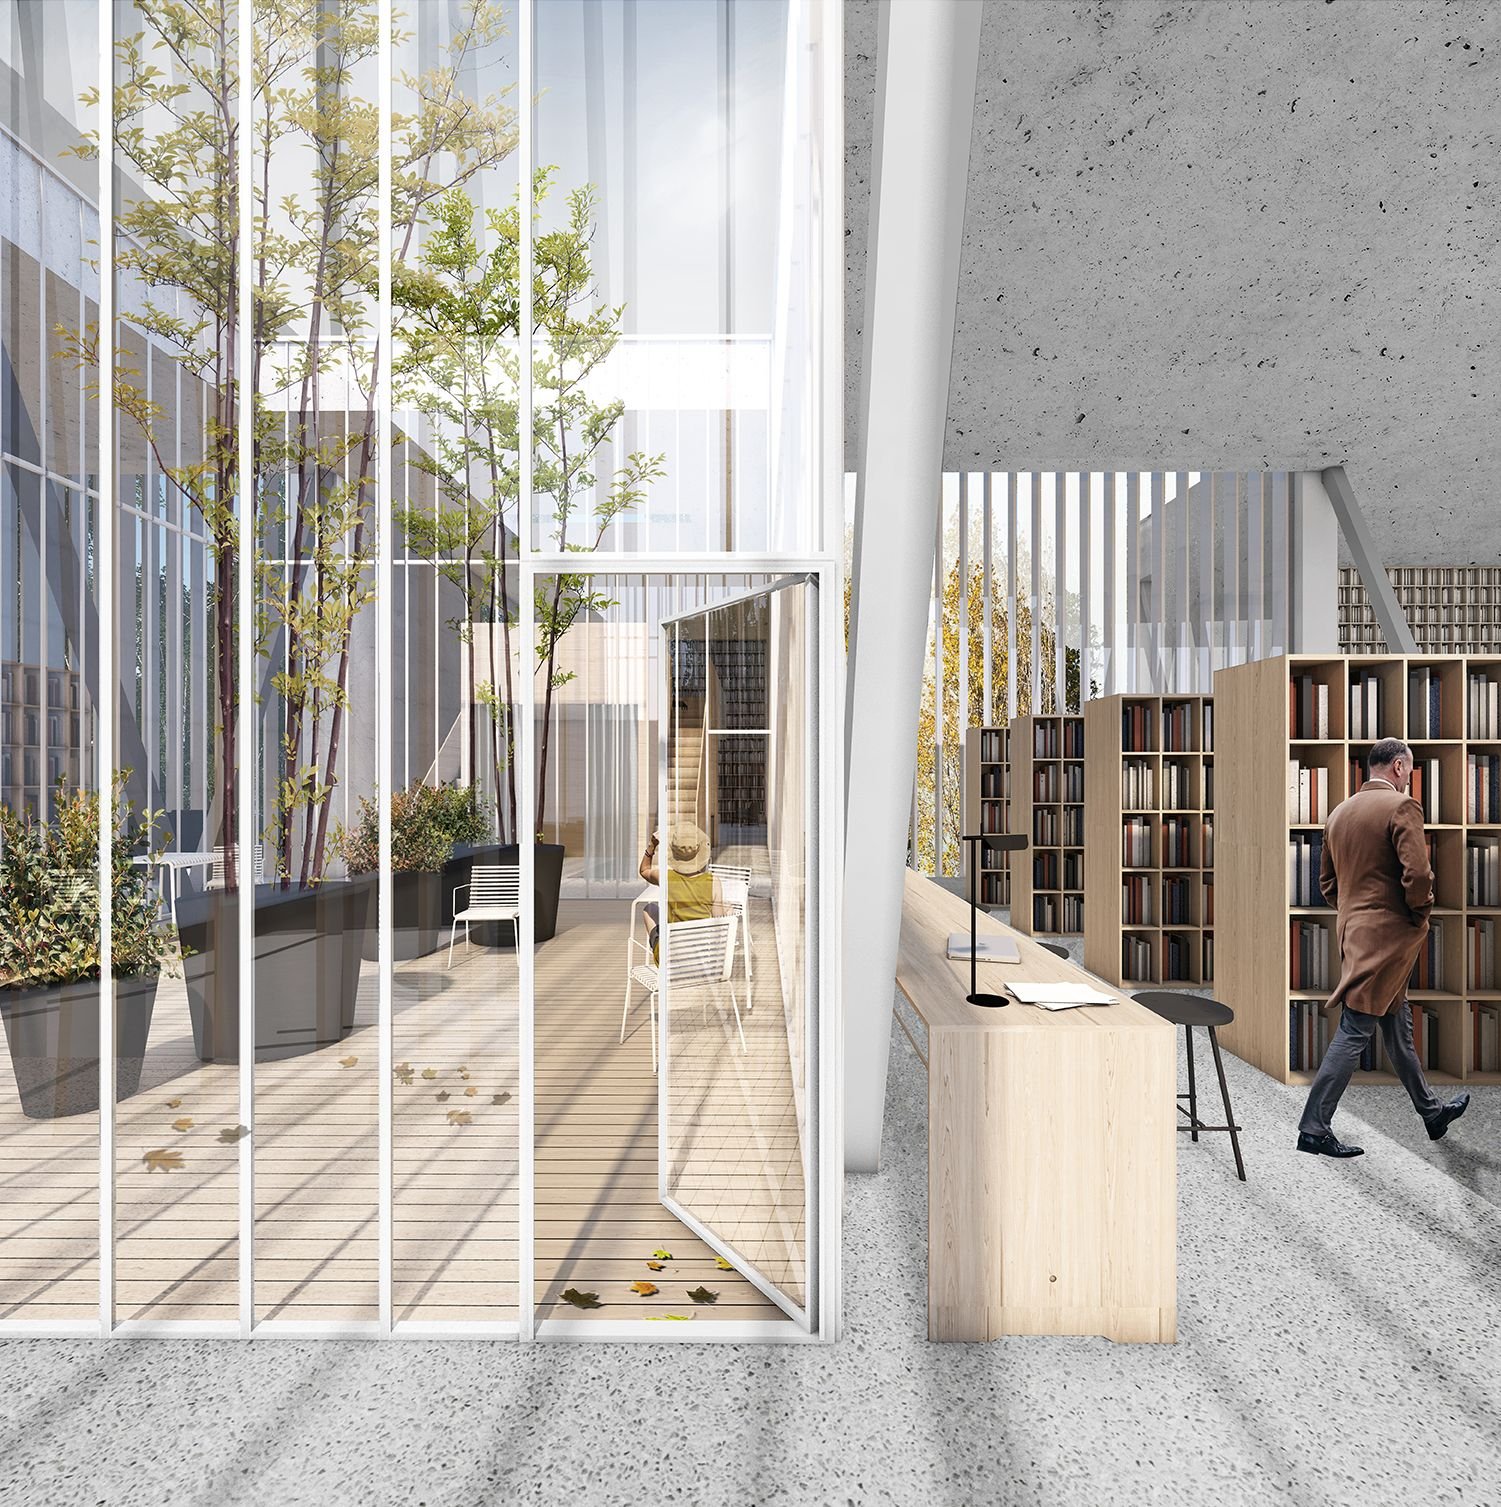 Klaipėda Atveria Duris Ateičiai: Bibliotekos Architektūrinio Projekto Konkursas